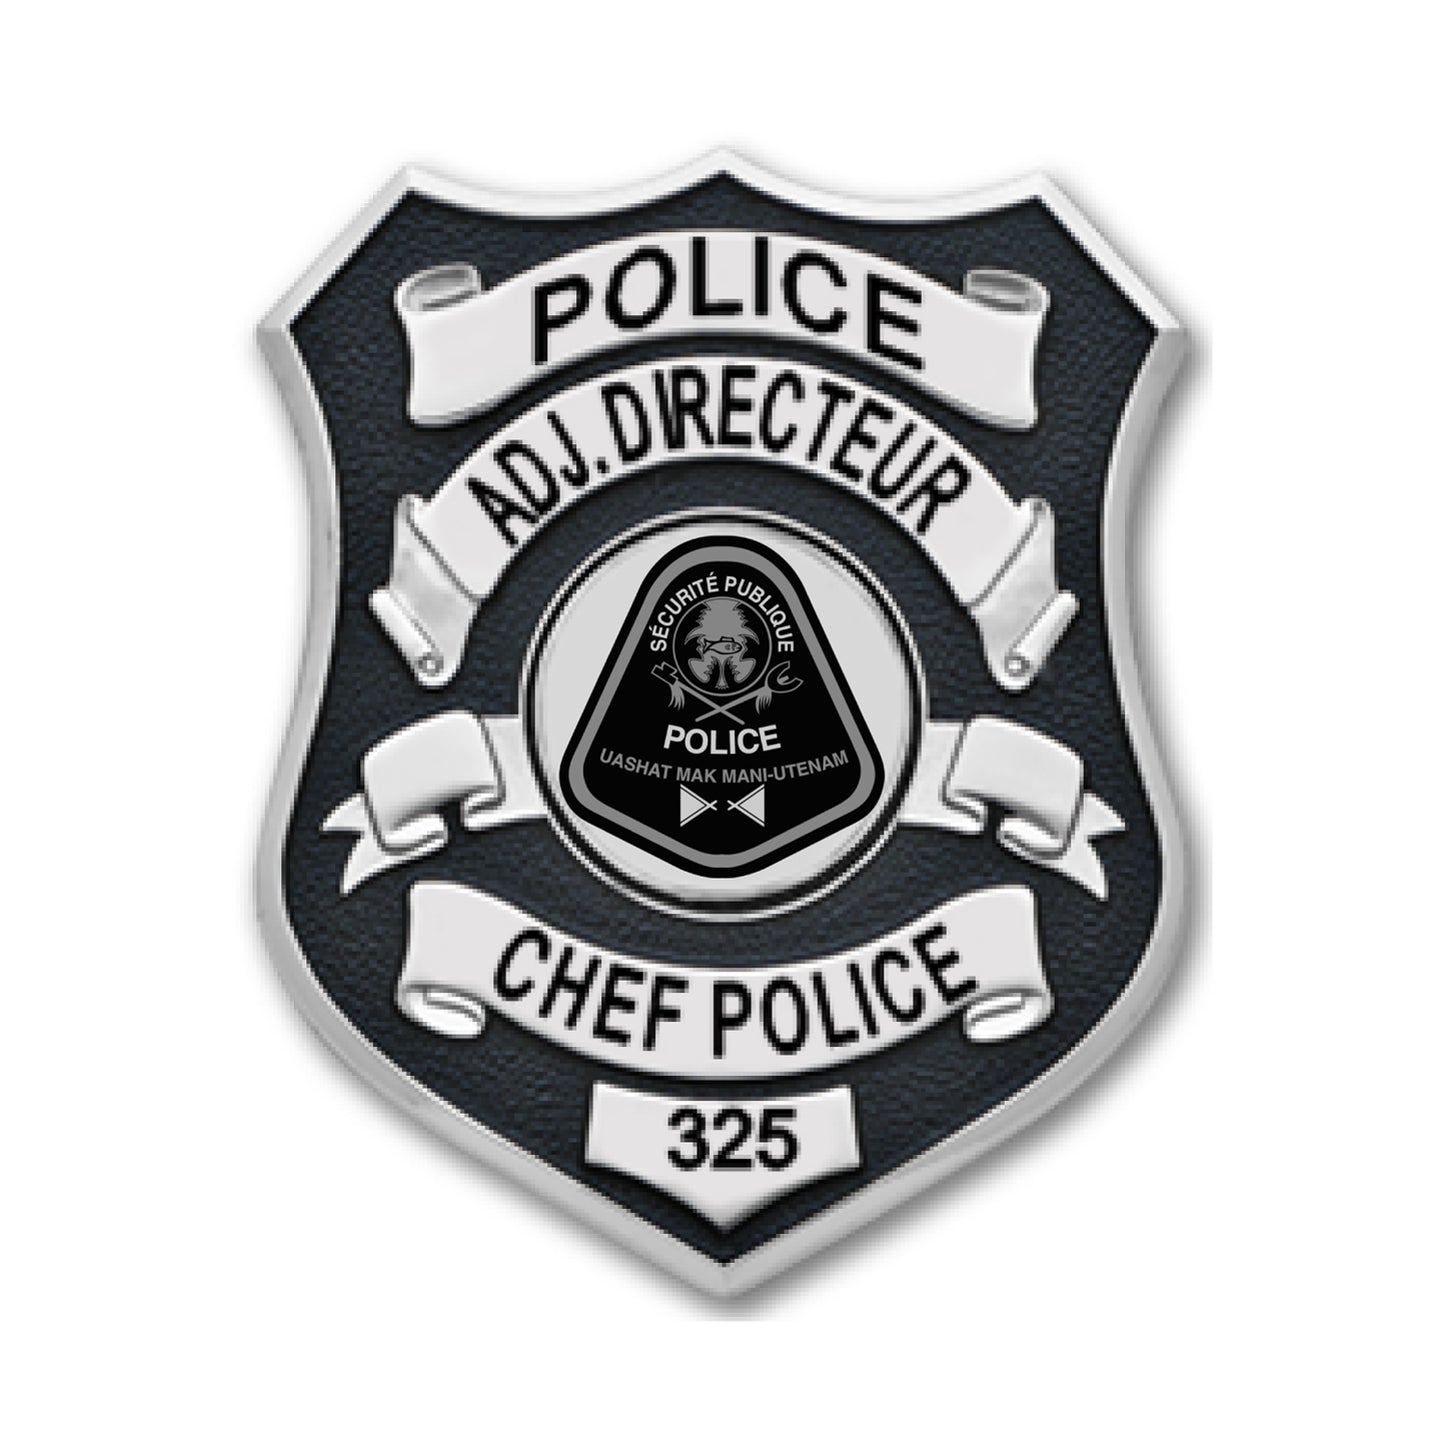 Adj. Directeur Chef police Badge SPUM - Smith & Warren